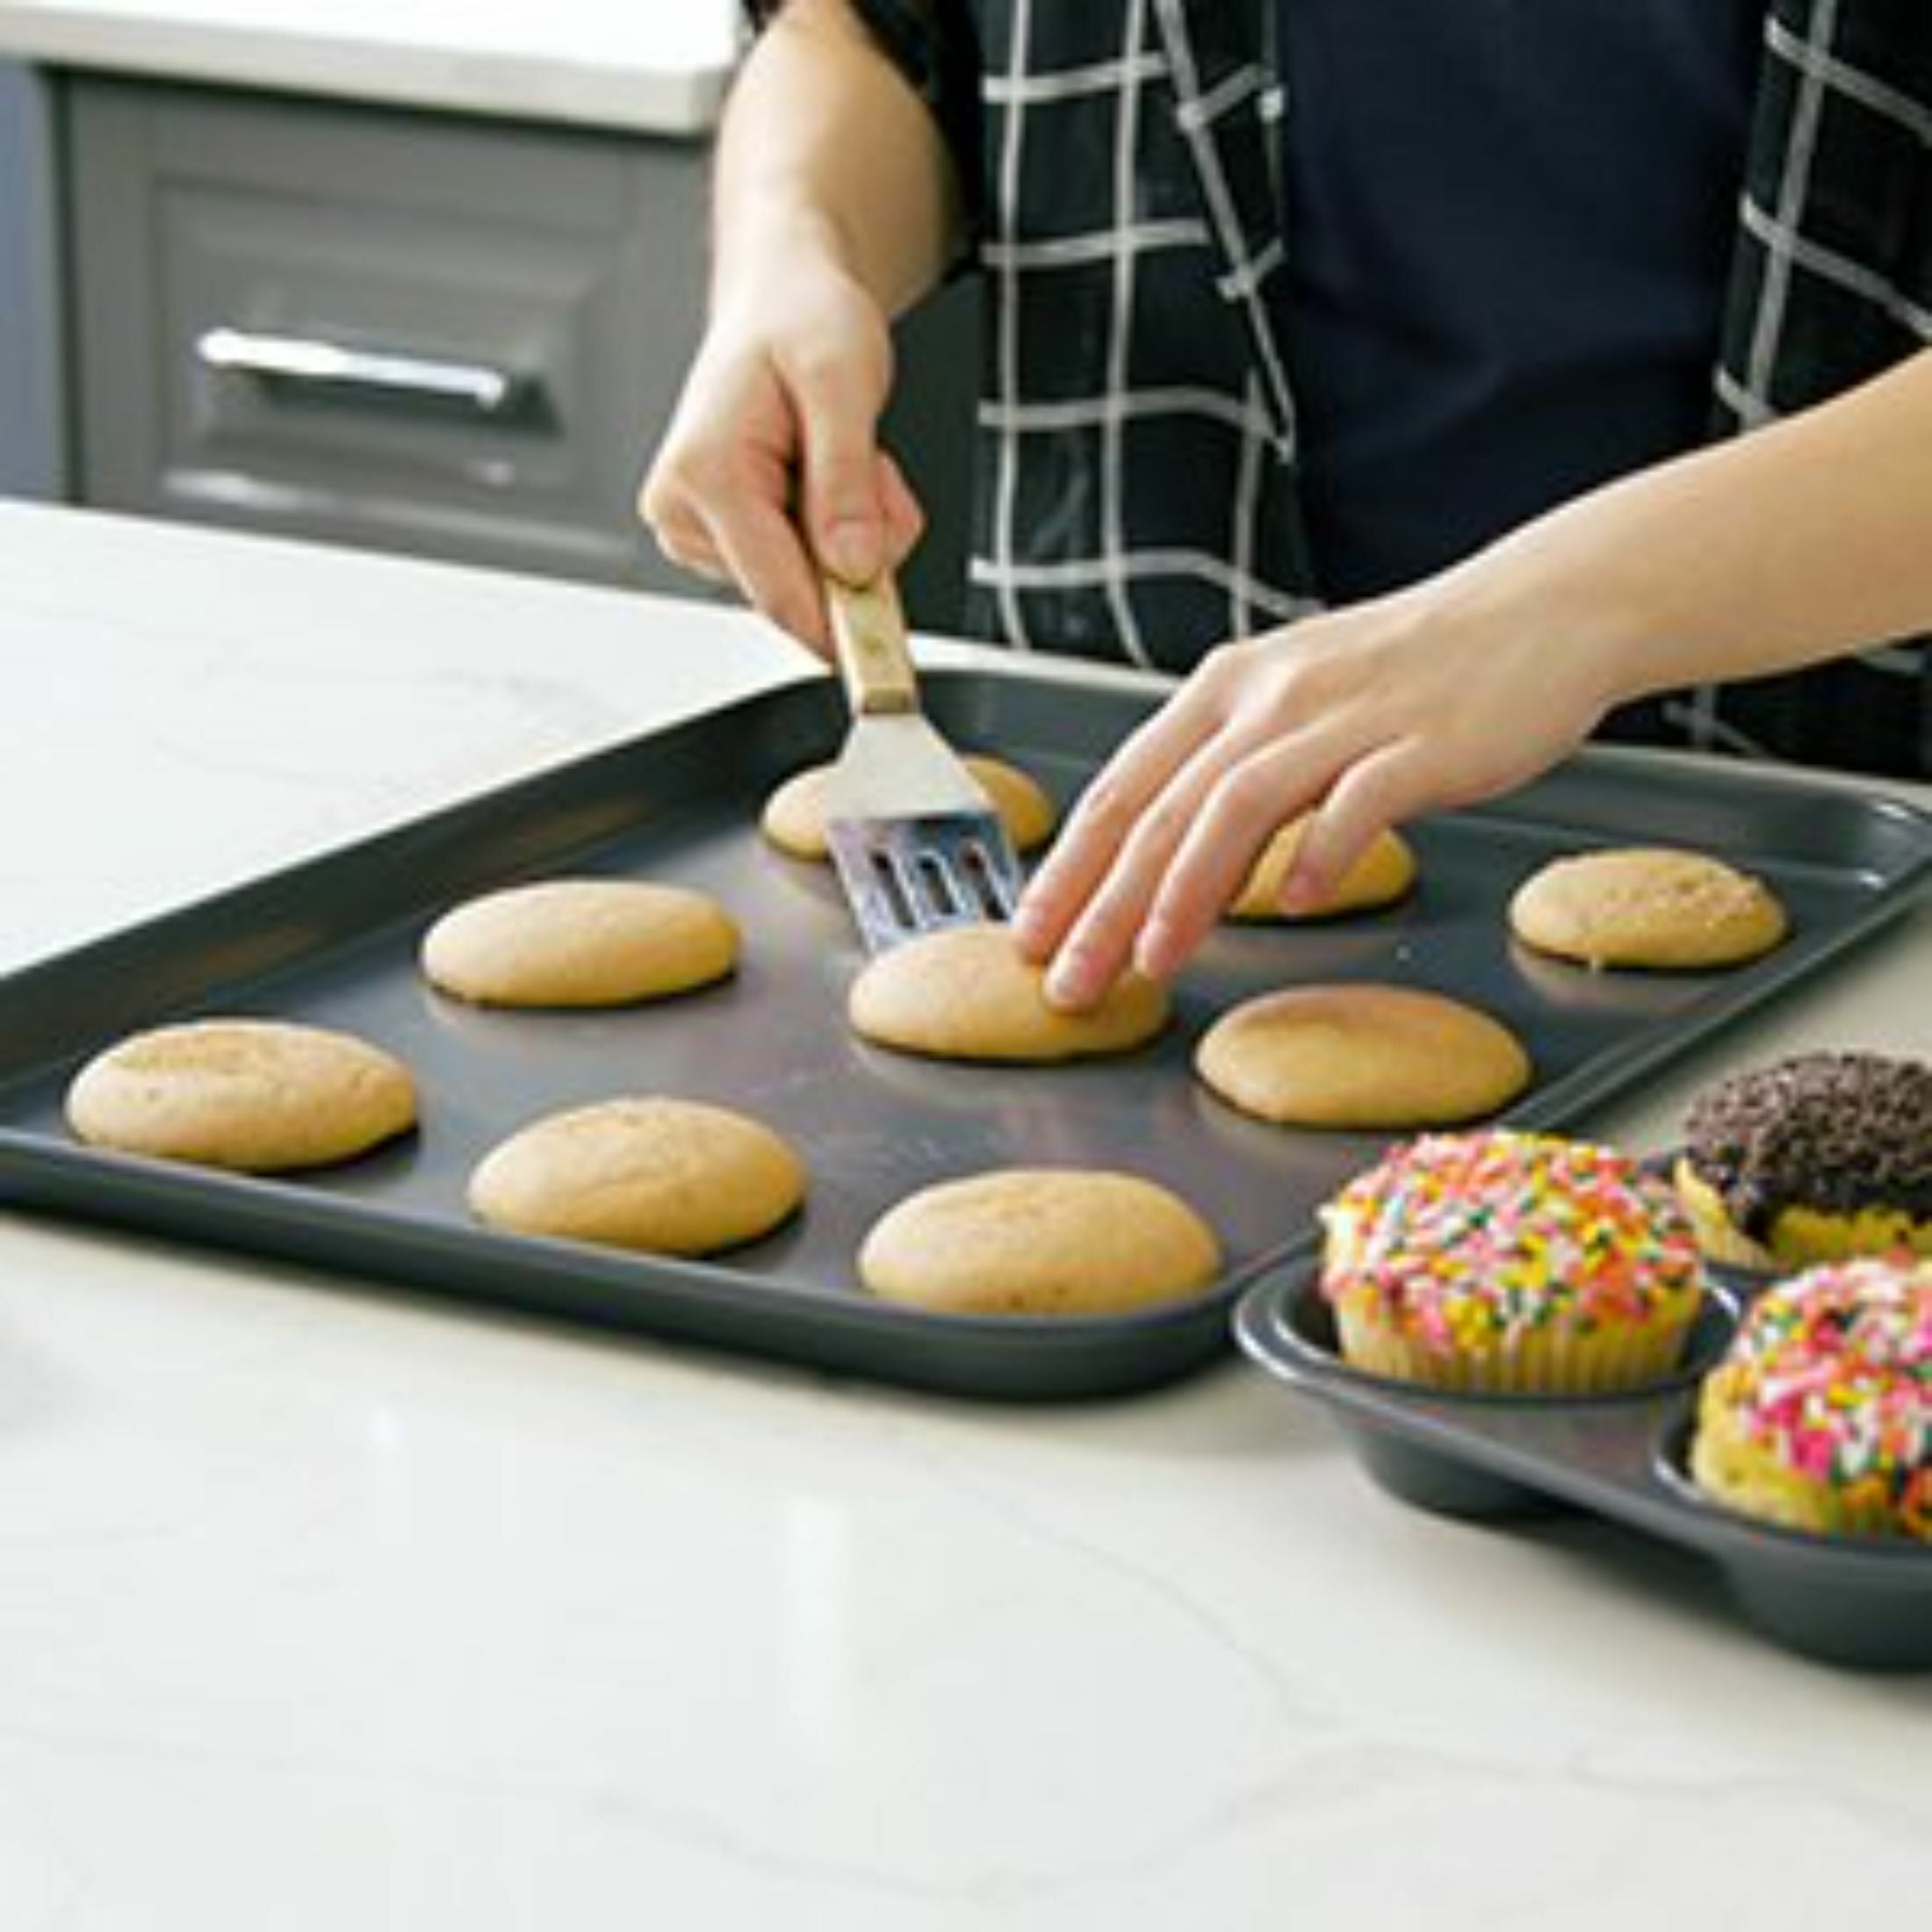 Nonstick Baking Pans Set - Bakeware Set Baking Sheets For Oven, 7 PCS  Stackable Baking Set w/Cookie Sheet, Cake Pan, Loaf Pan, Muffin Pan,  Roaster Pan, Cooling Rack, PTFE & PFOA Free